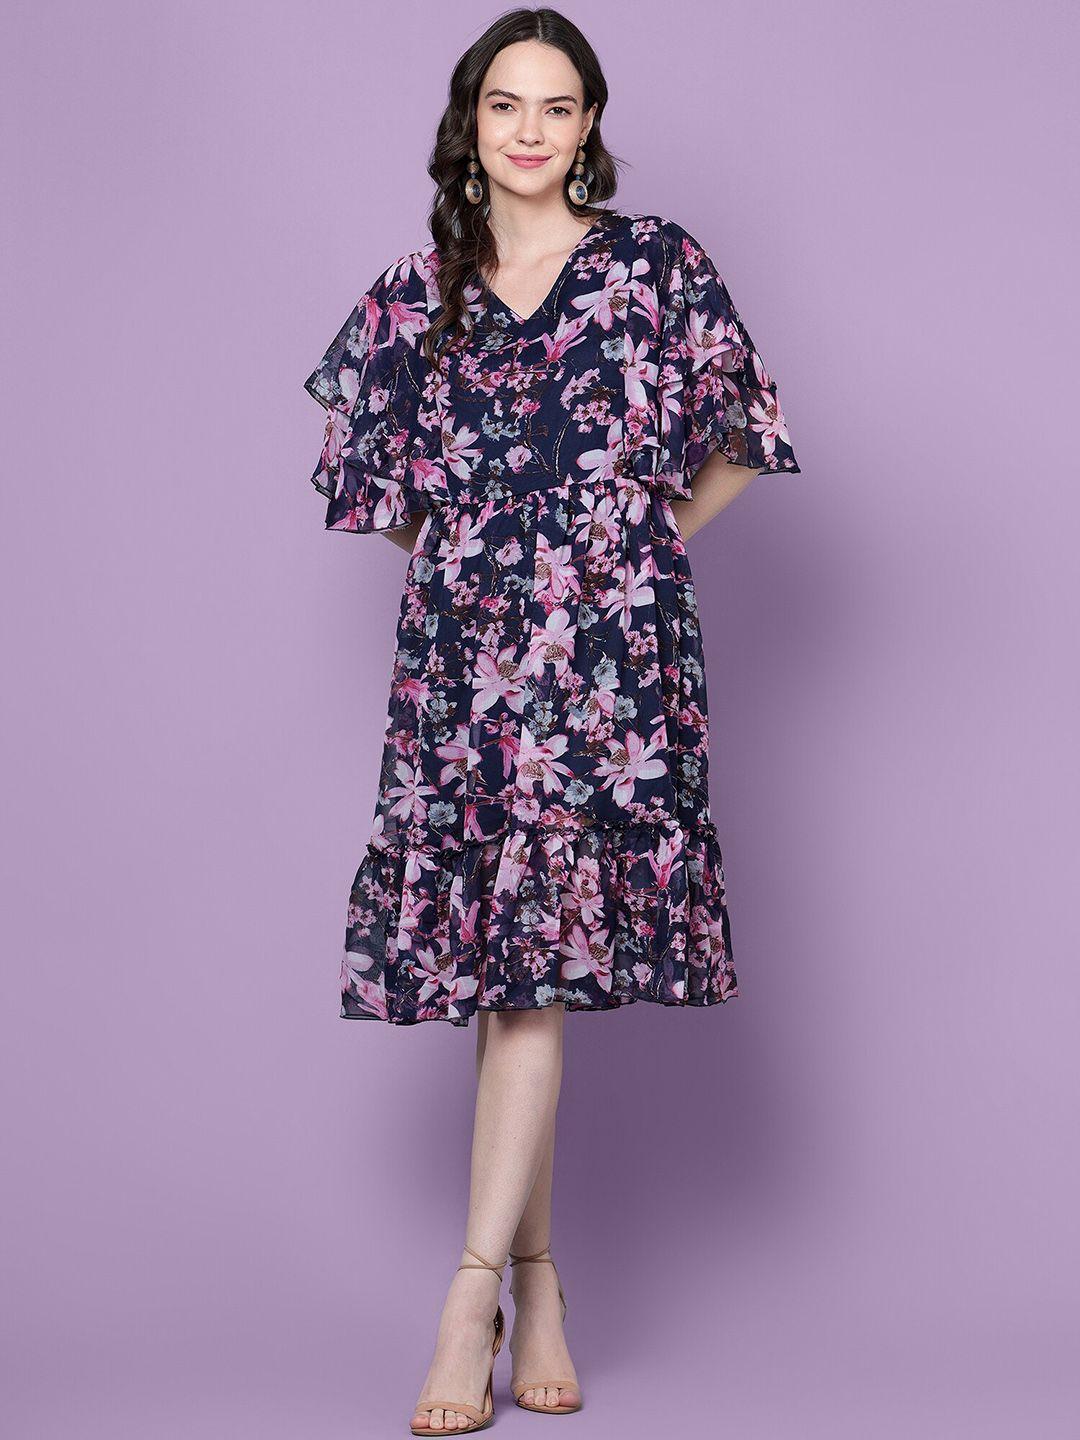 diaz-purple-print-georgette-fit-&-flare-dress